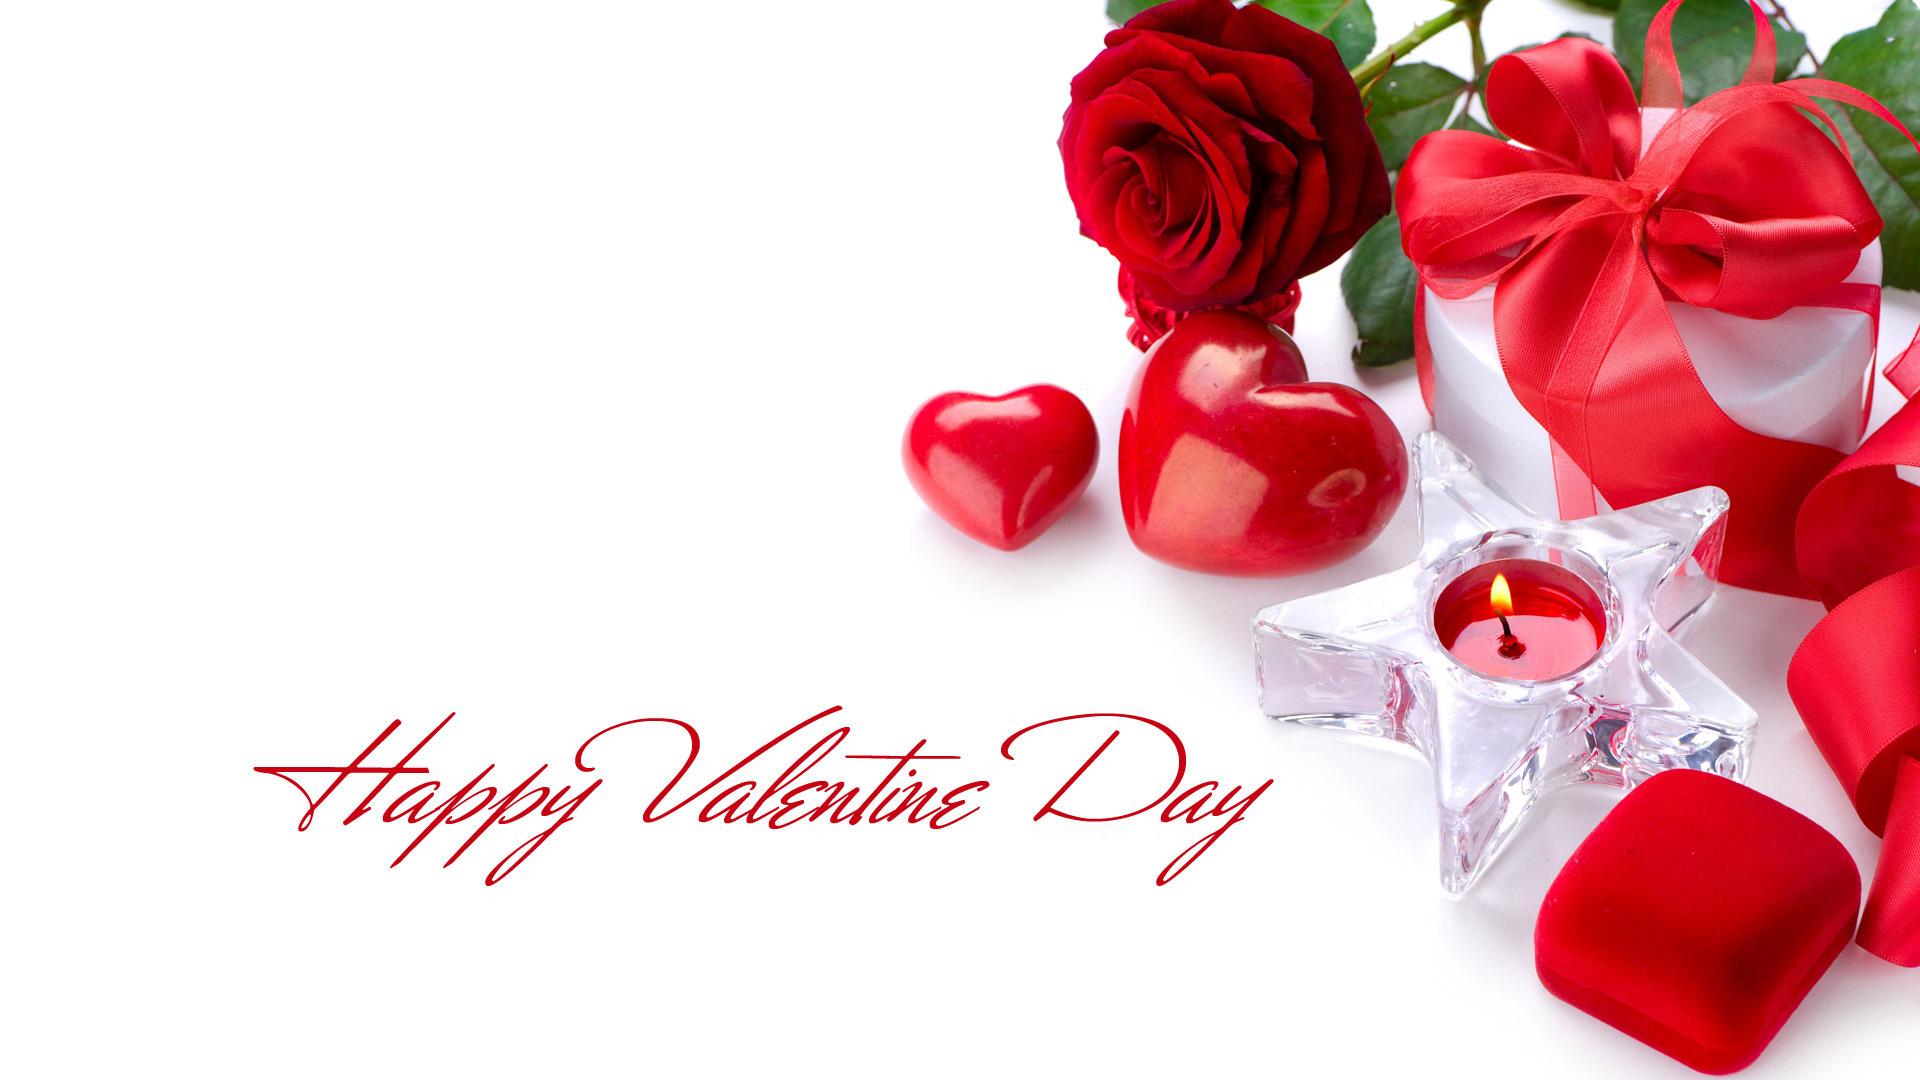 Free download Happy Valentines Day Desktop Wallpaper Background